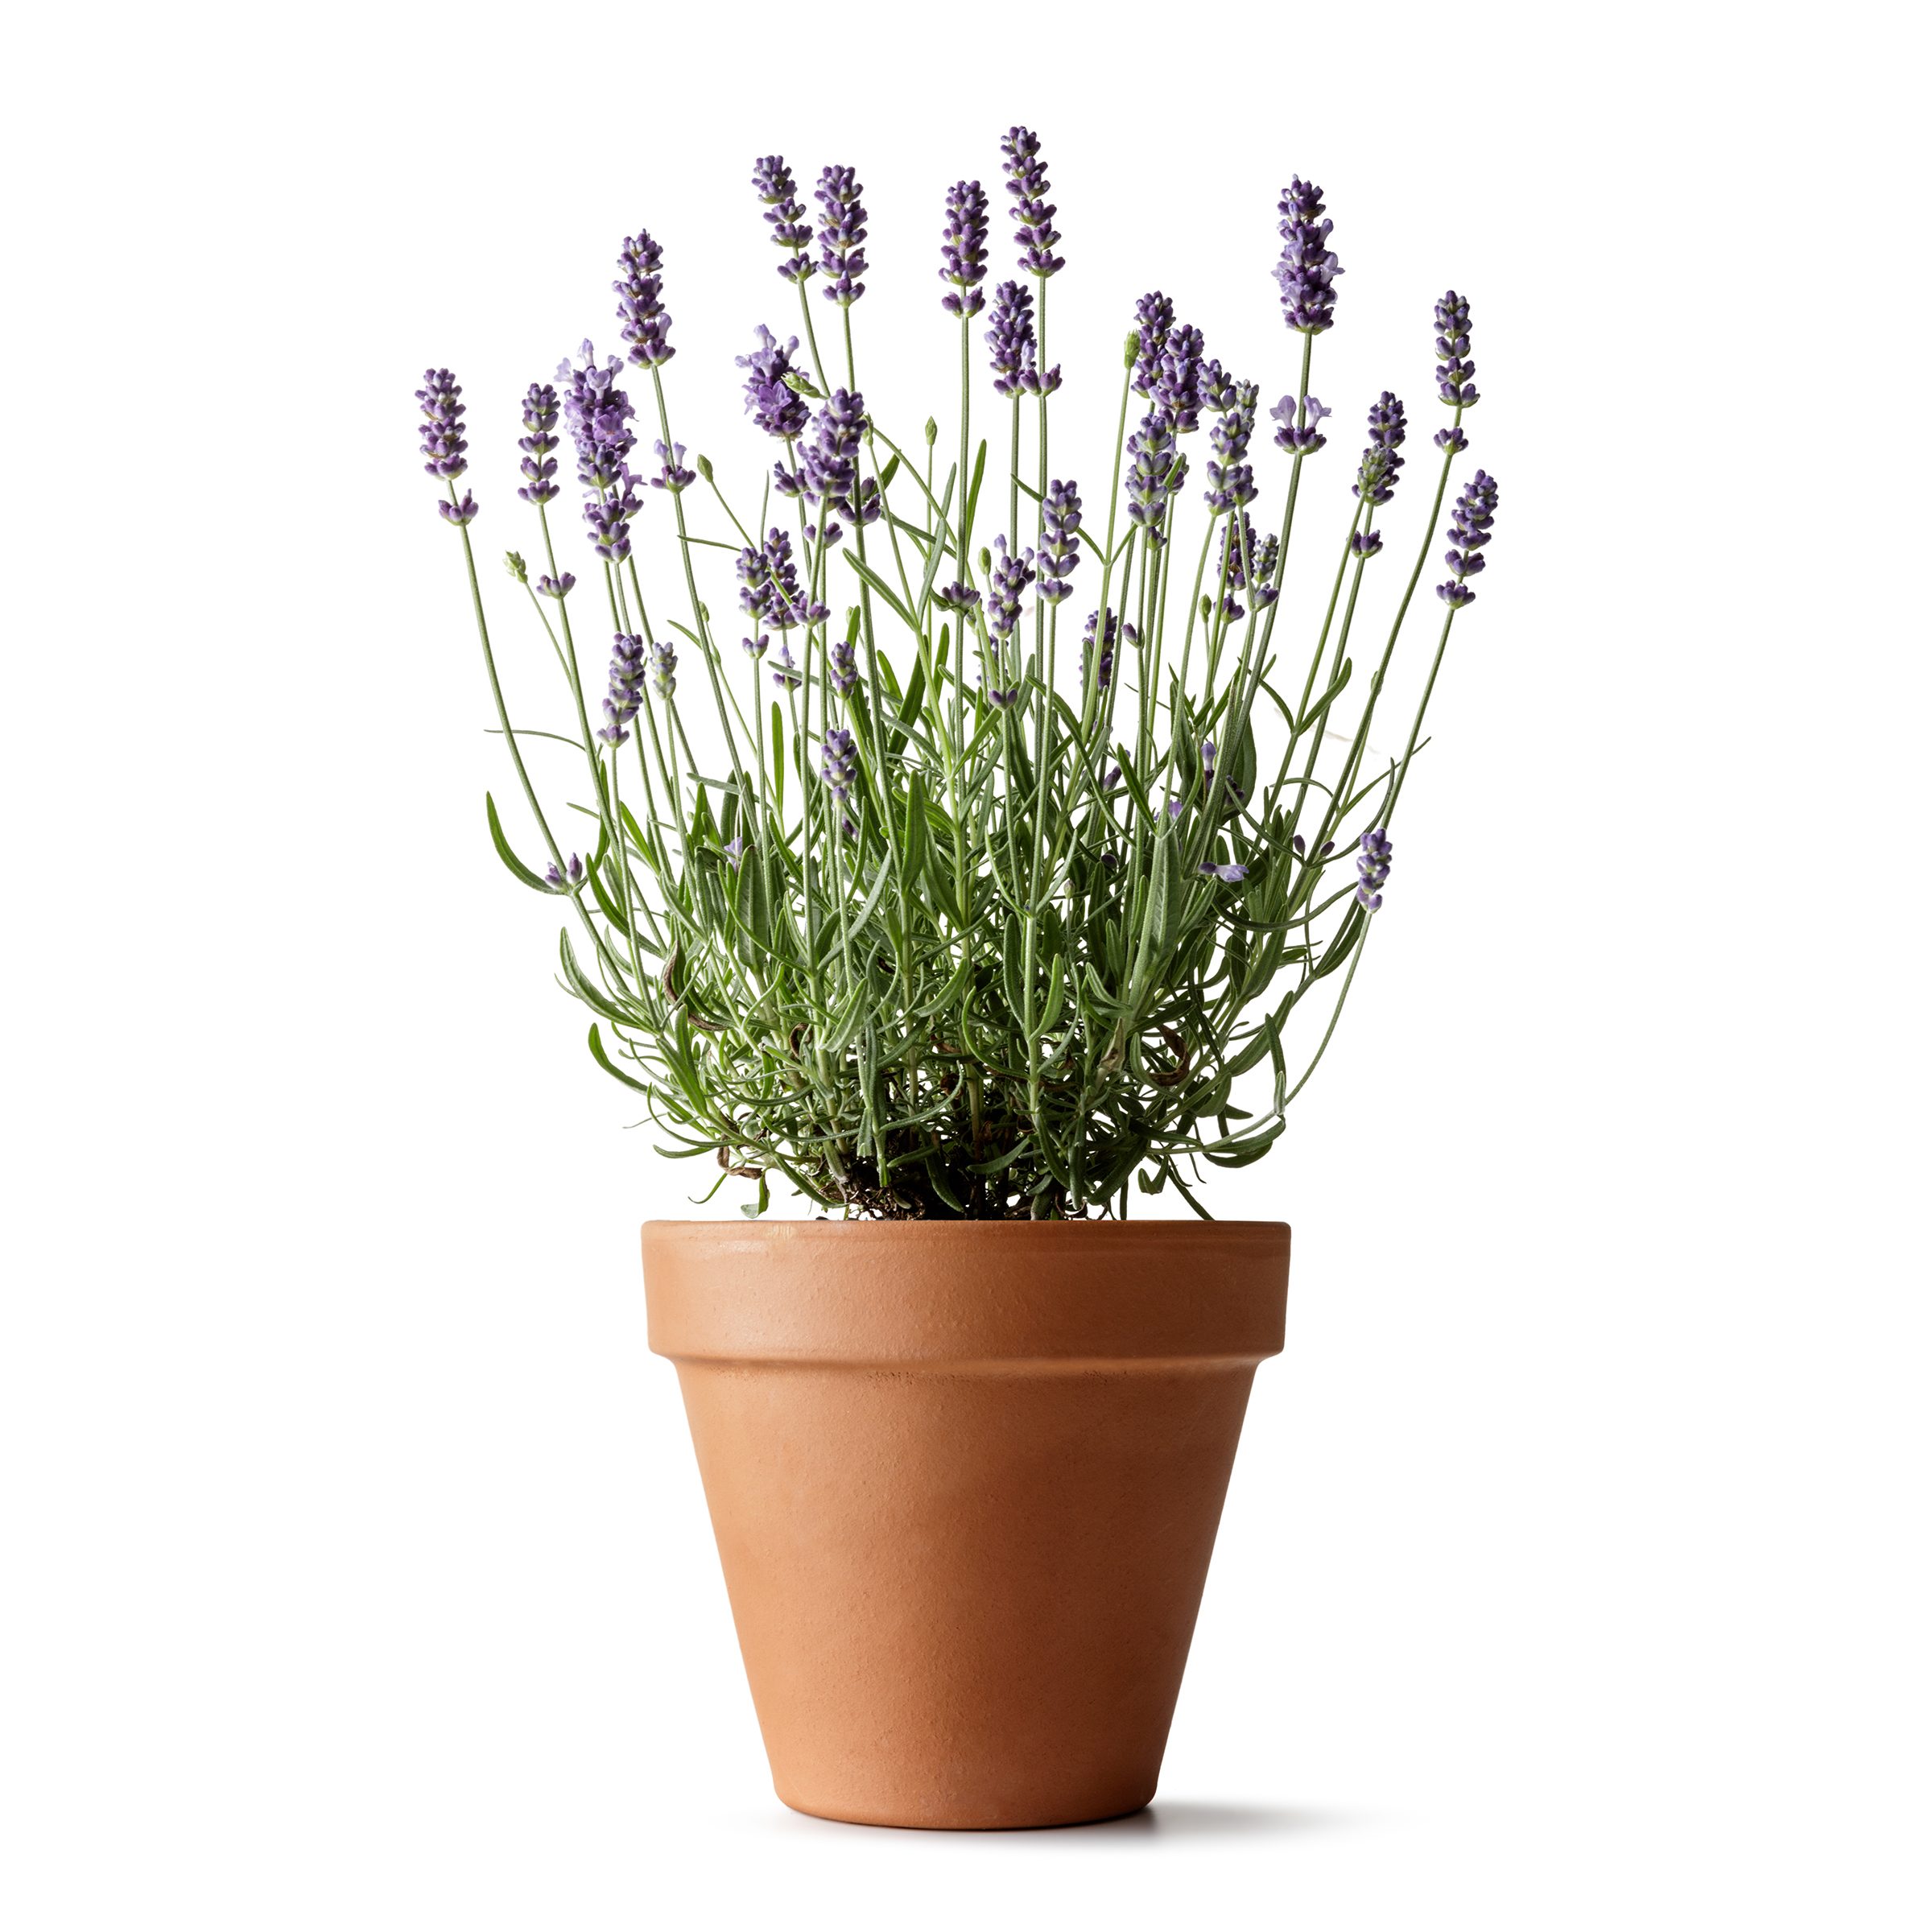 Lavender plant in pot